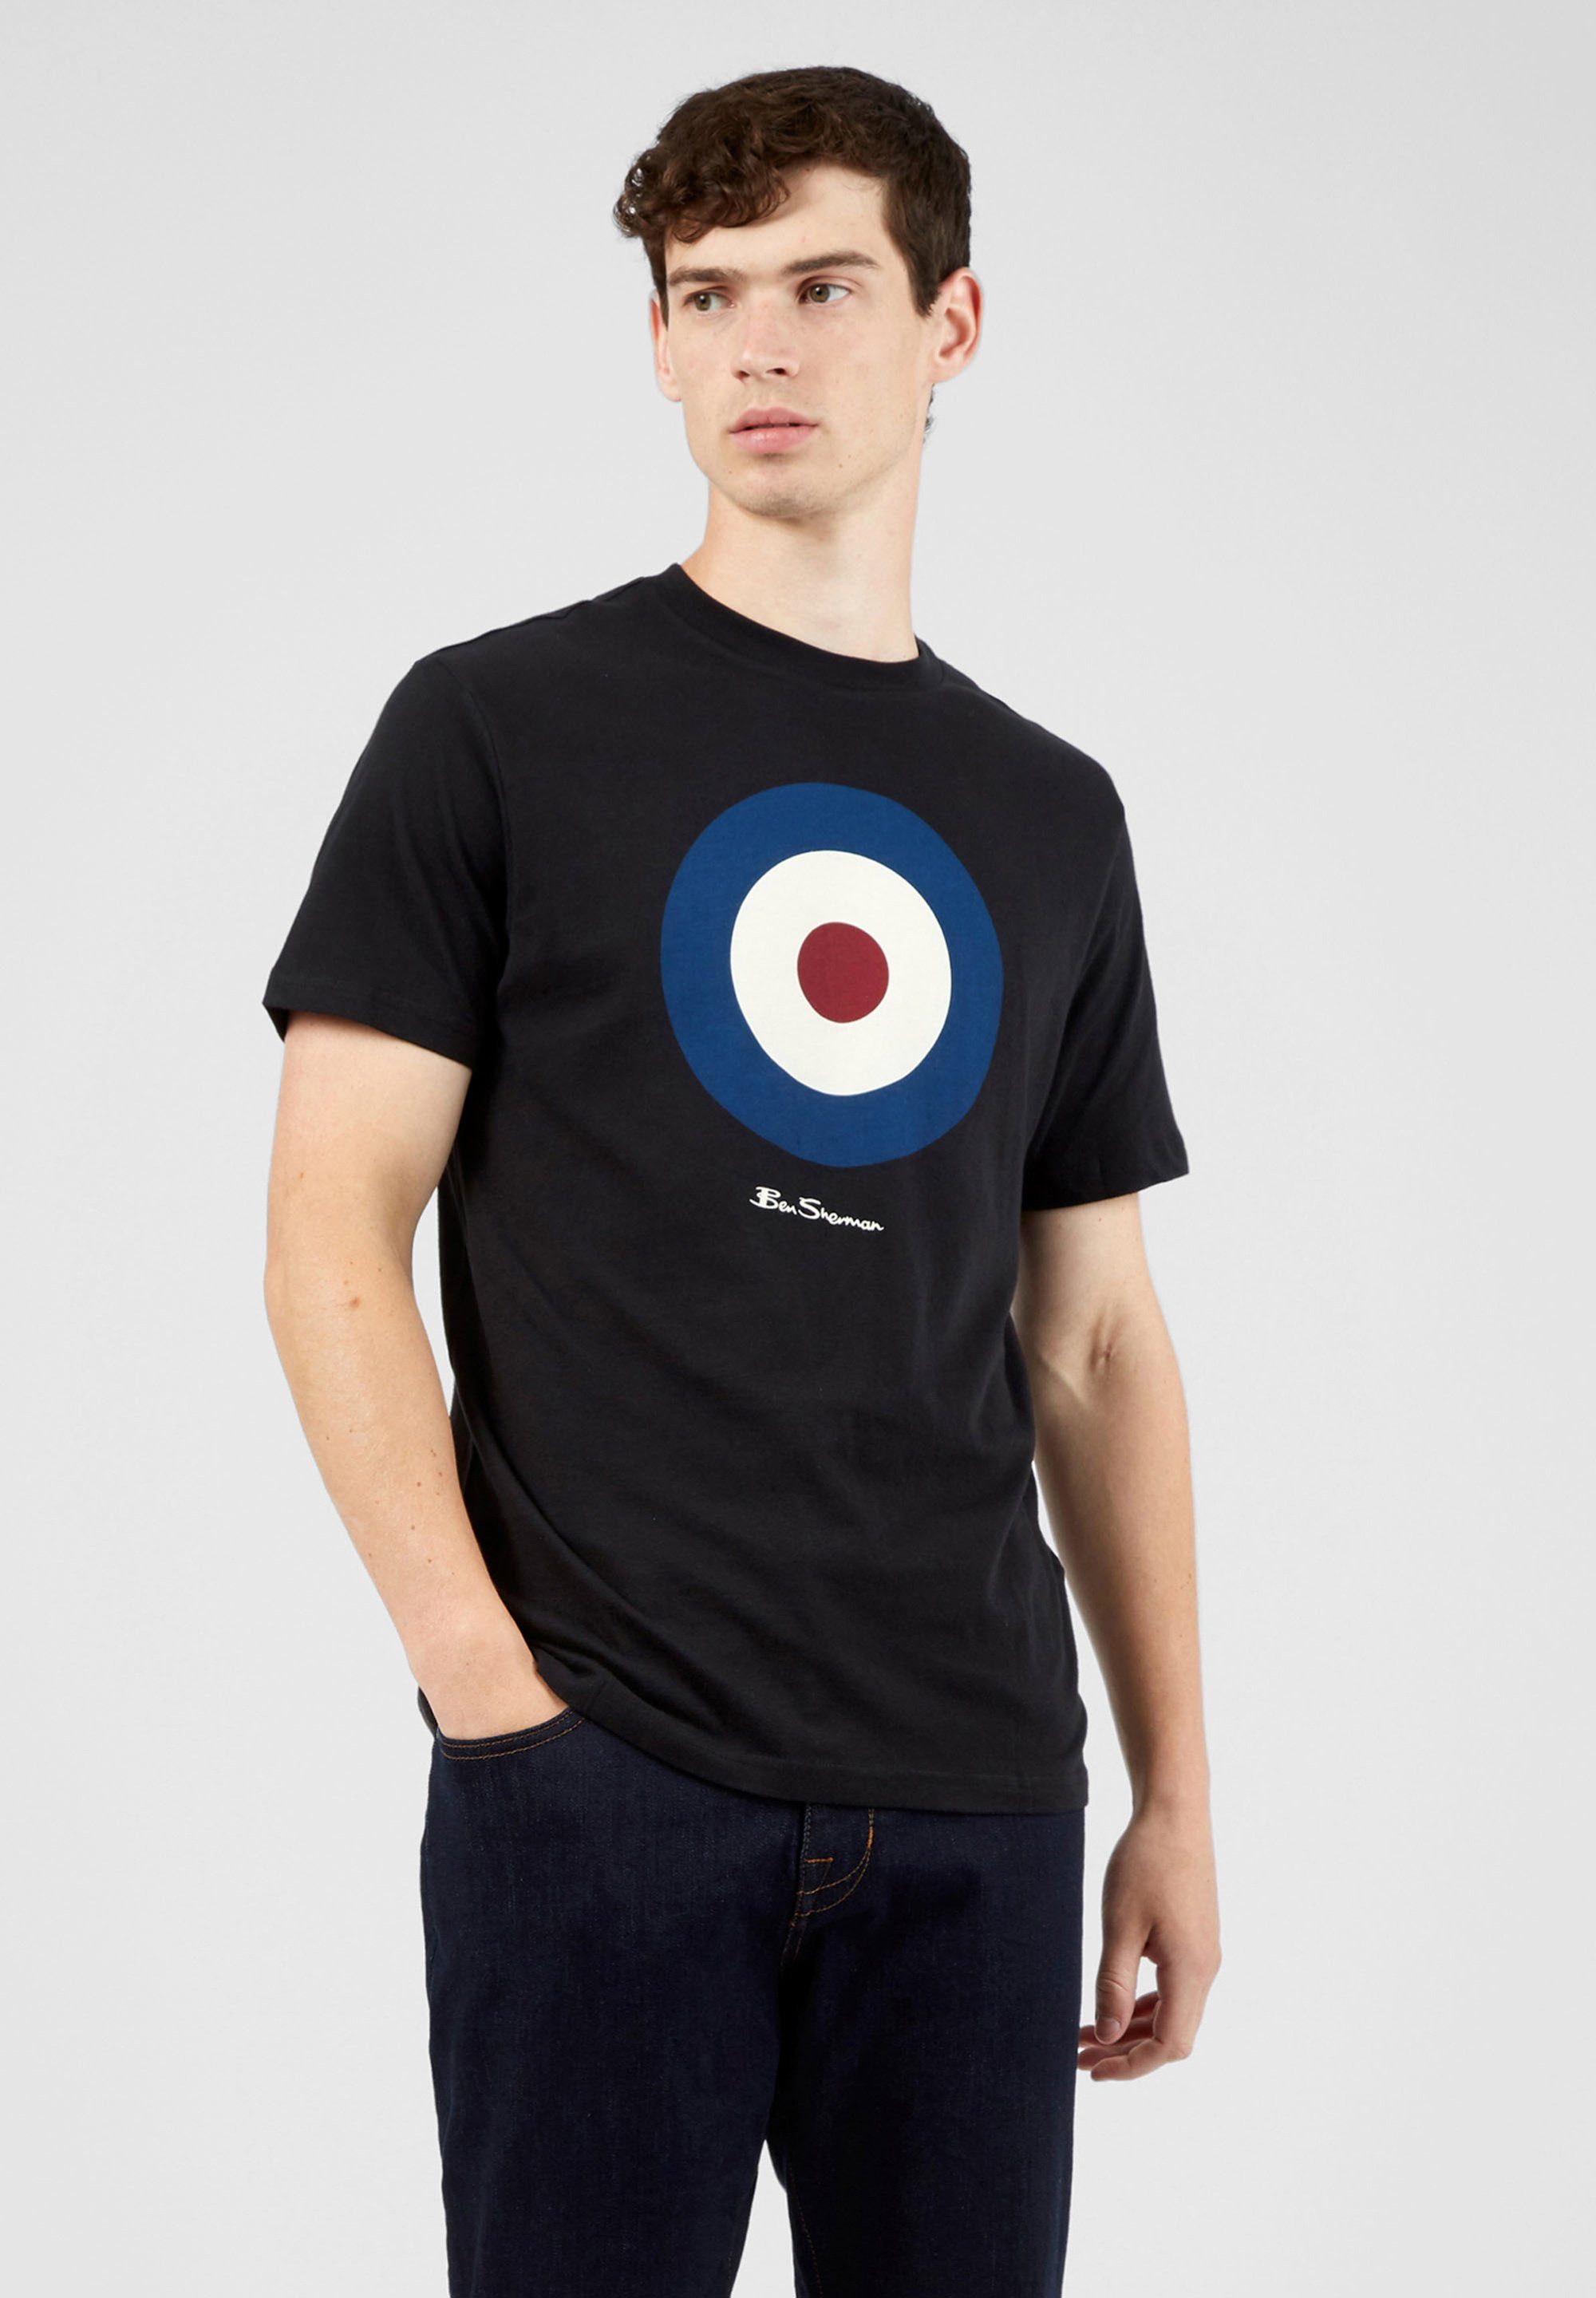 Ben Sherman T-Shirt Signature Target Tee Grafisch bedrucktes T-Shirt schwarz